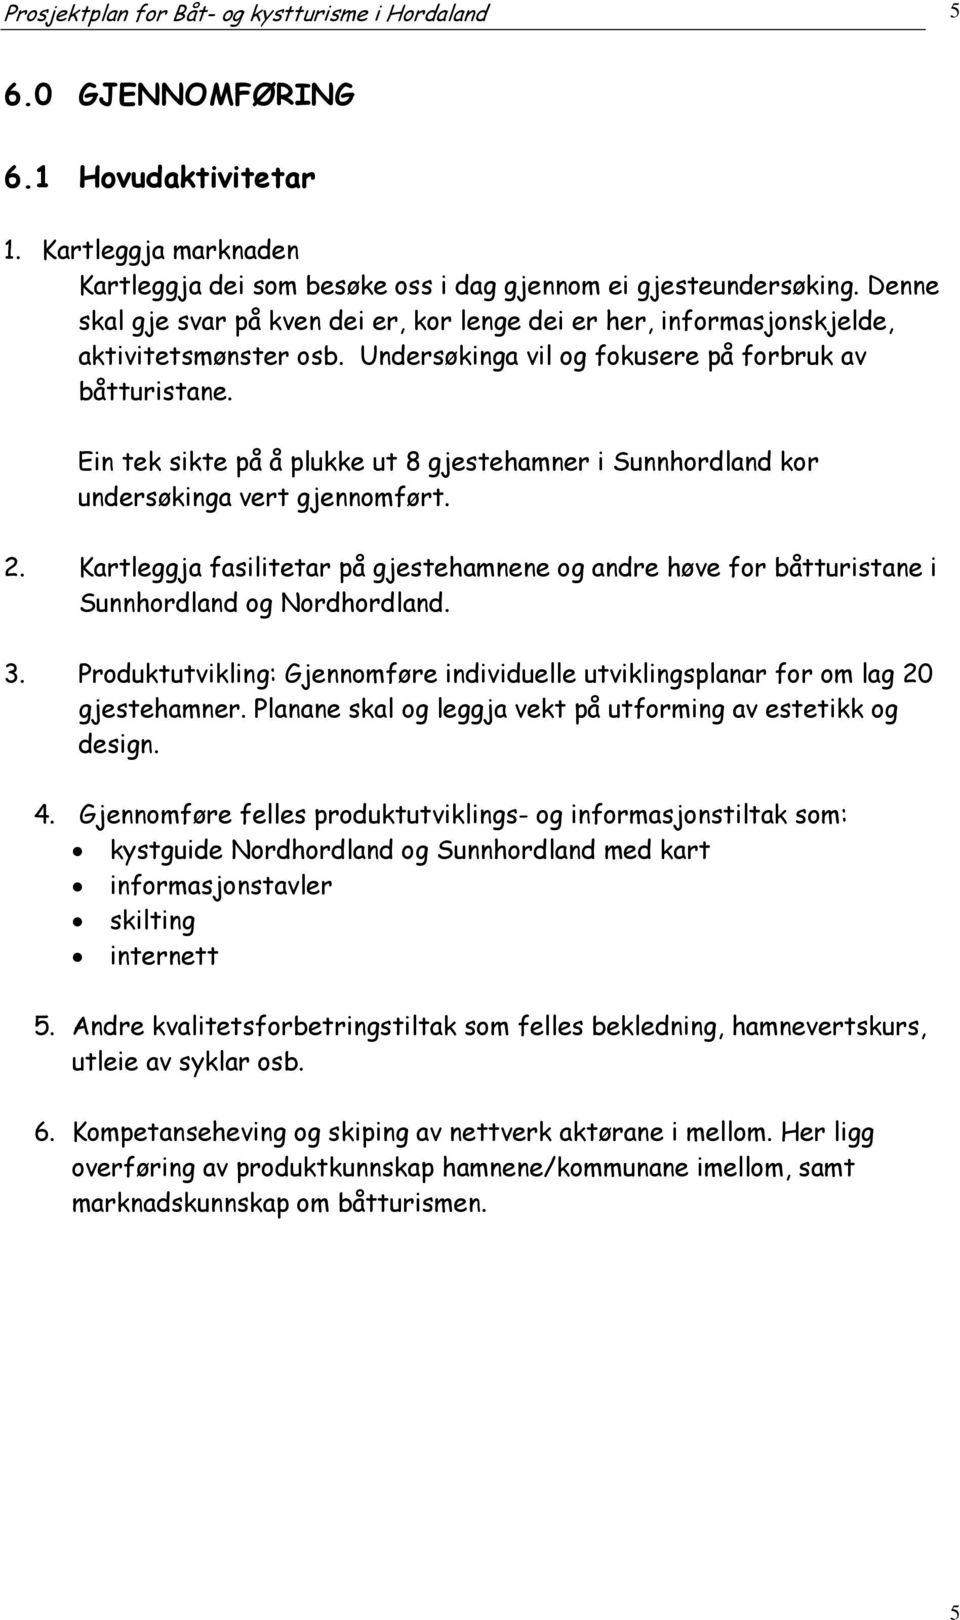 Ein tek sikte på å plukke ut 8 gjestehamner i Sunnhordland kor undersøkinga vert gjennomført. 2. Kartleggja fasilitetar på gjestehamnene og andre høve for båtturistane i Sunnhordland og Nordhordland.